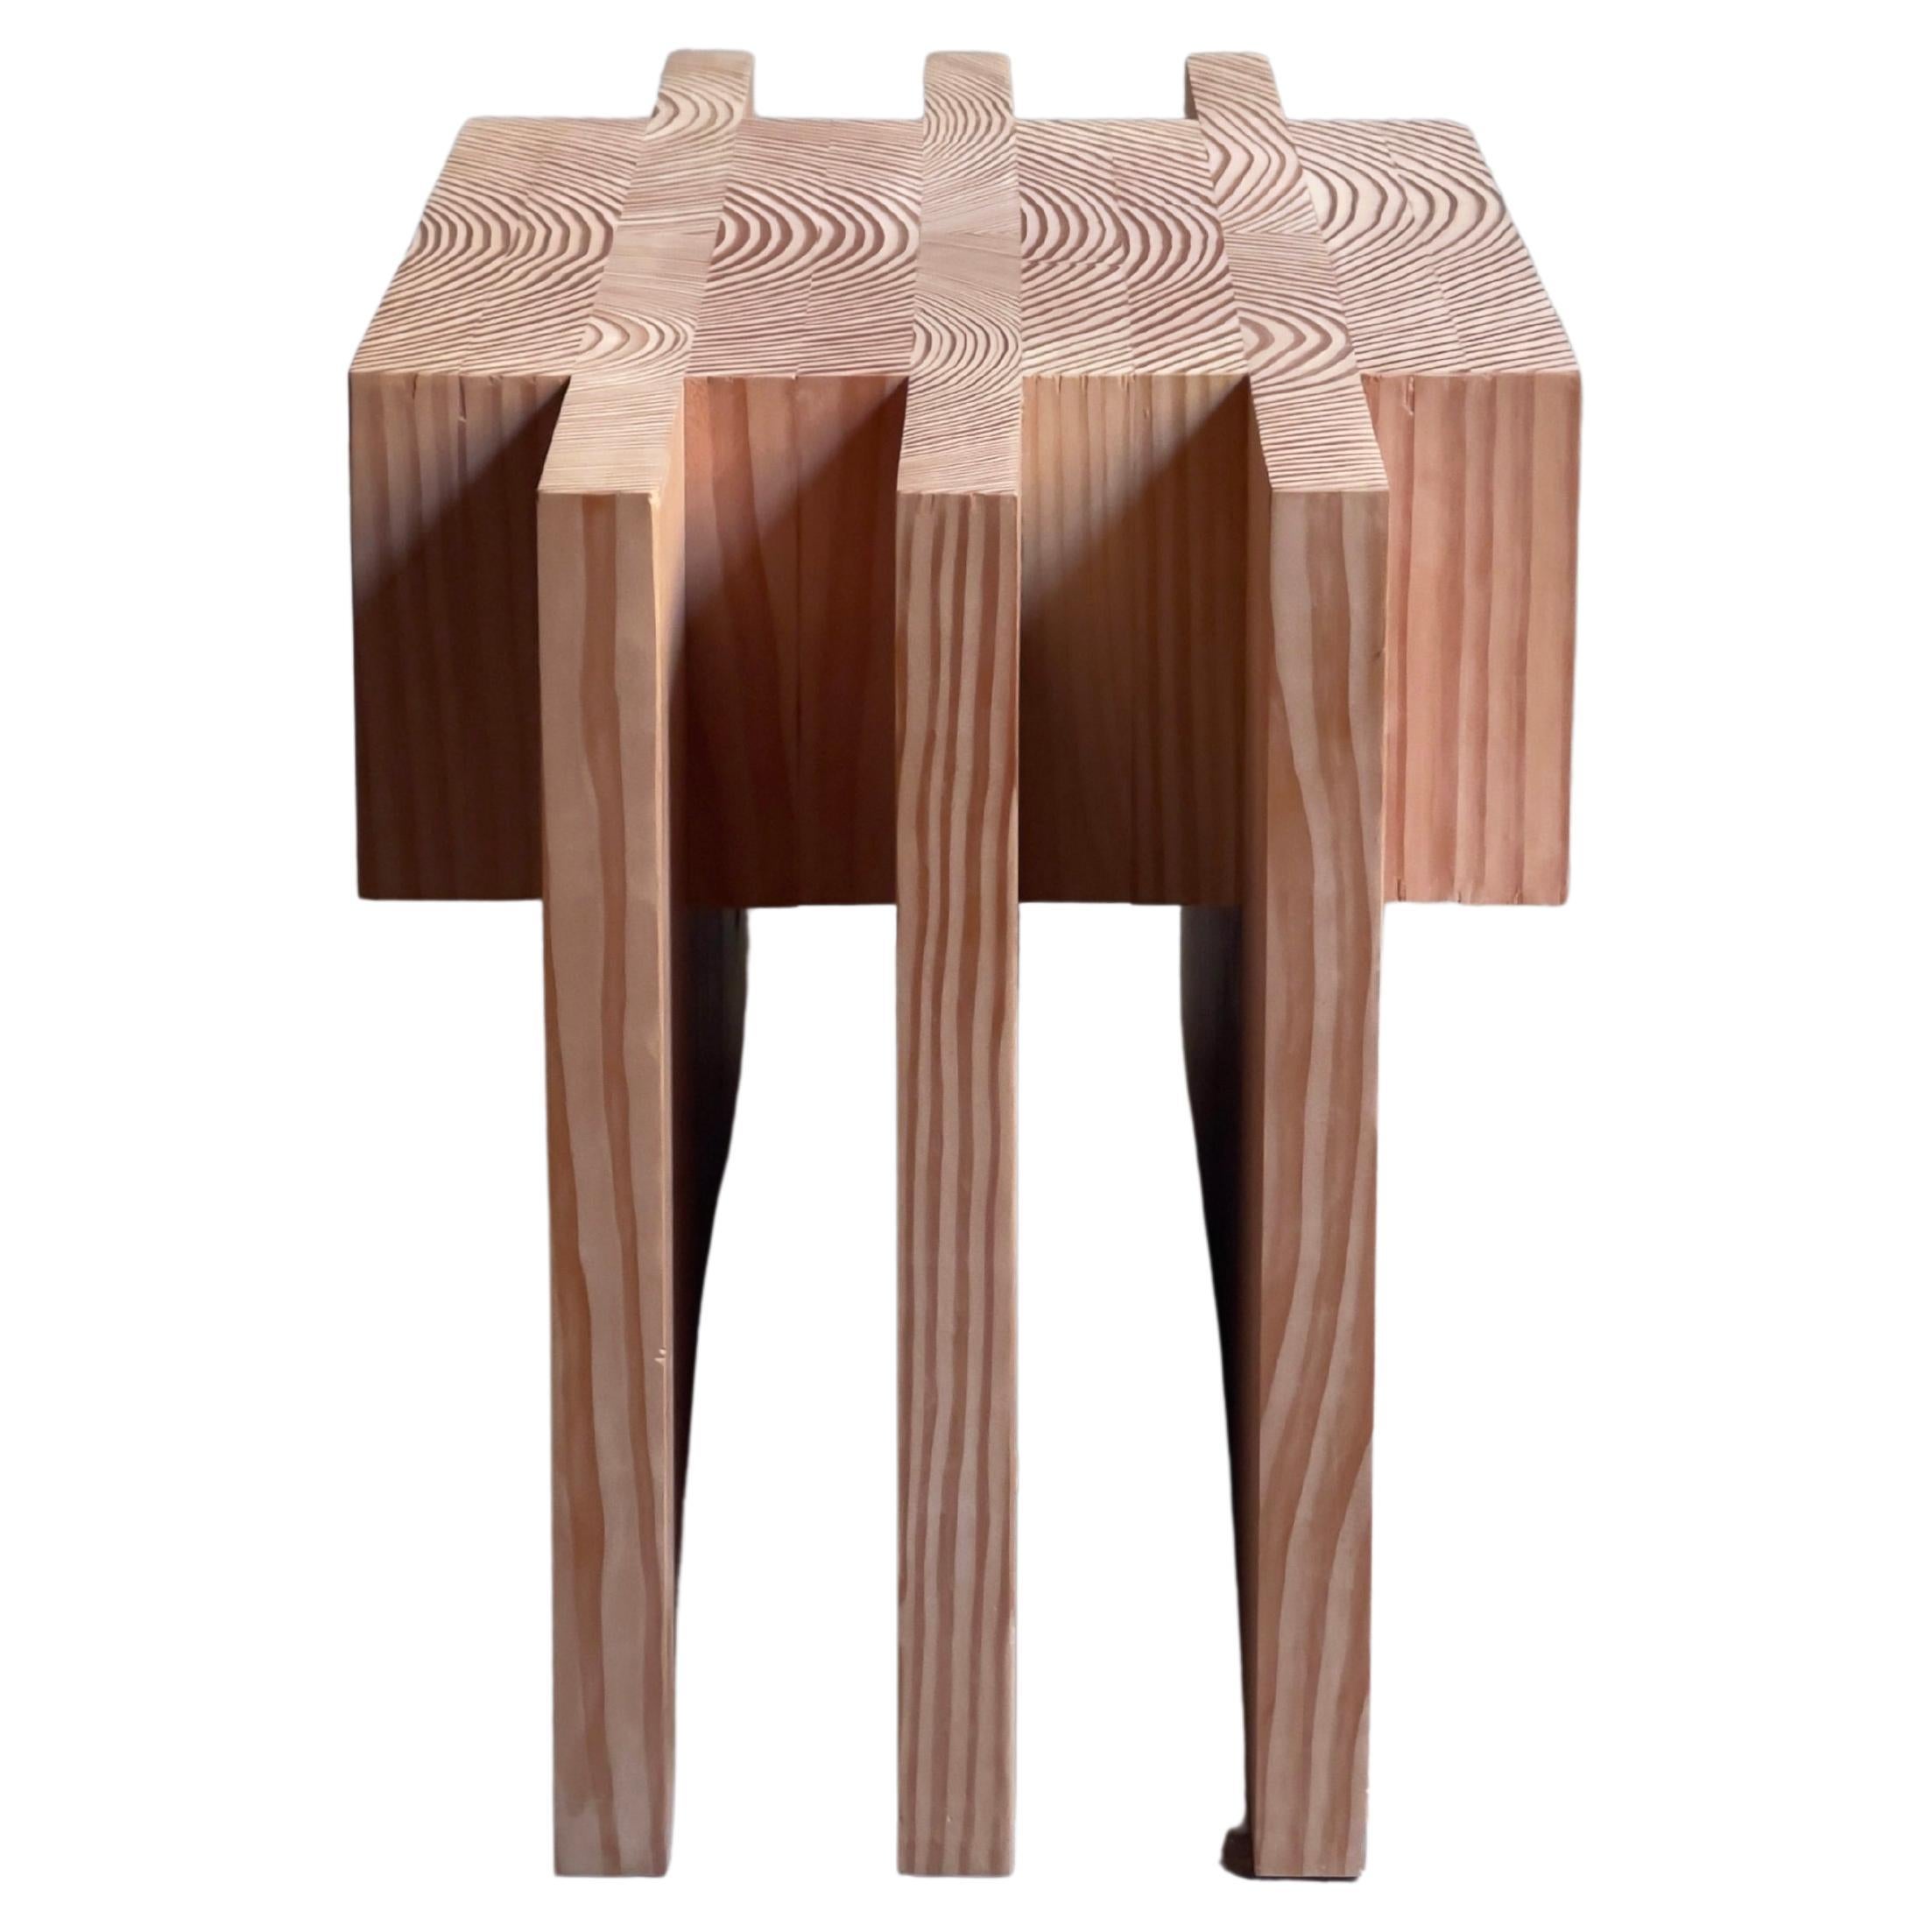 Offcut Collection'S
Lærke Ryom 2021 (unterzeichnet) 
(Weitere Objekte aus dieser Collection'S finden Sie in anderen Inseraten) 
Der dänische Möbeldesigner Lærke Ryom erforscht die Ästhetik des Hirnholzes und will damit das Potenzial und den Wert des